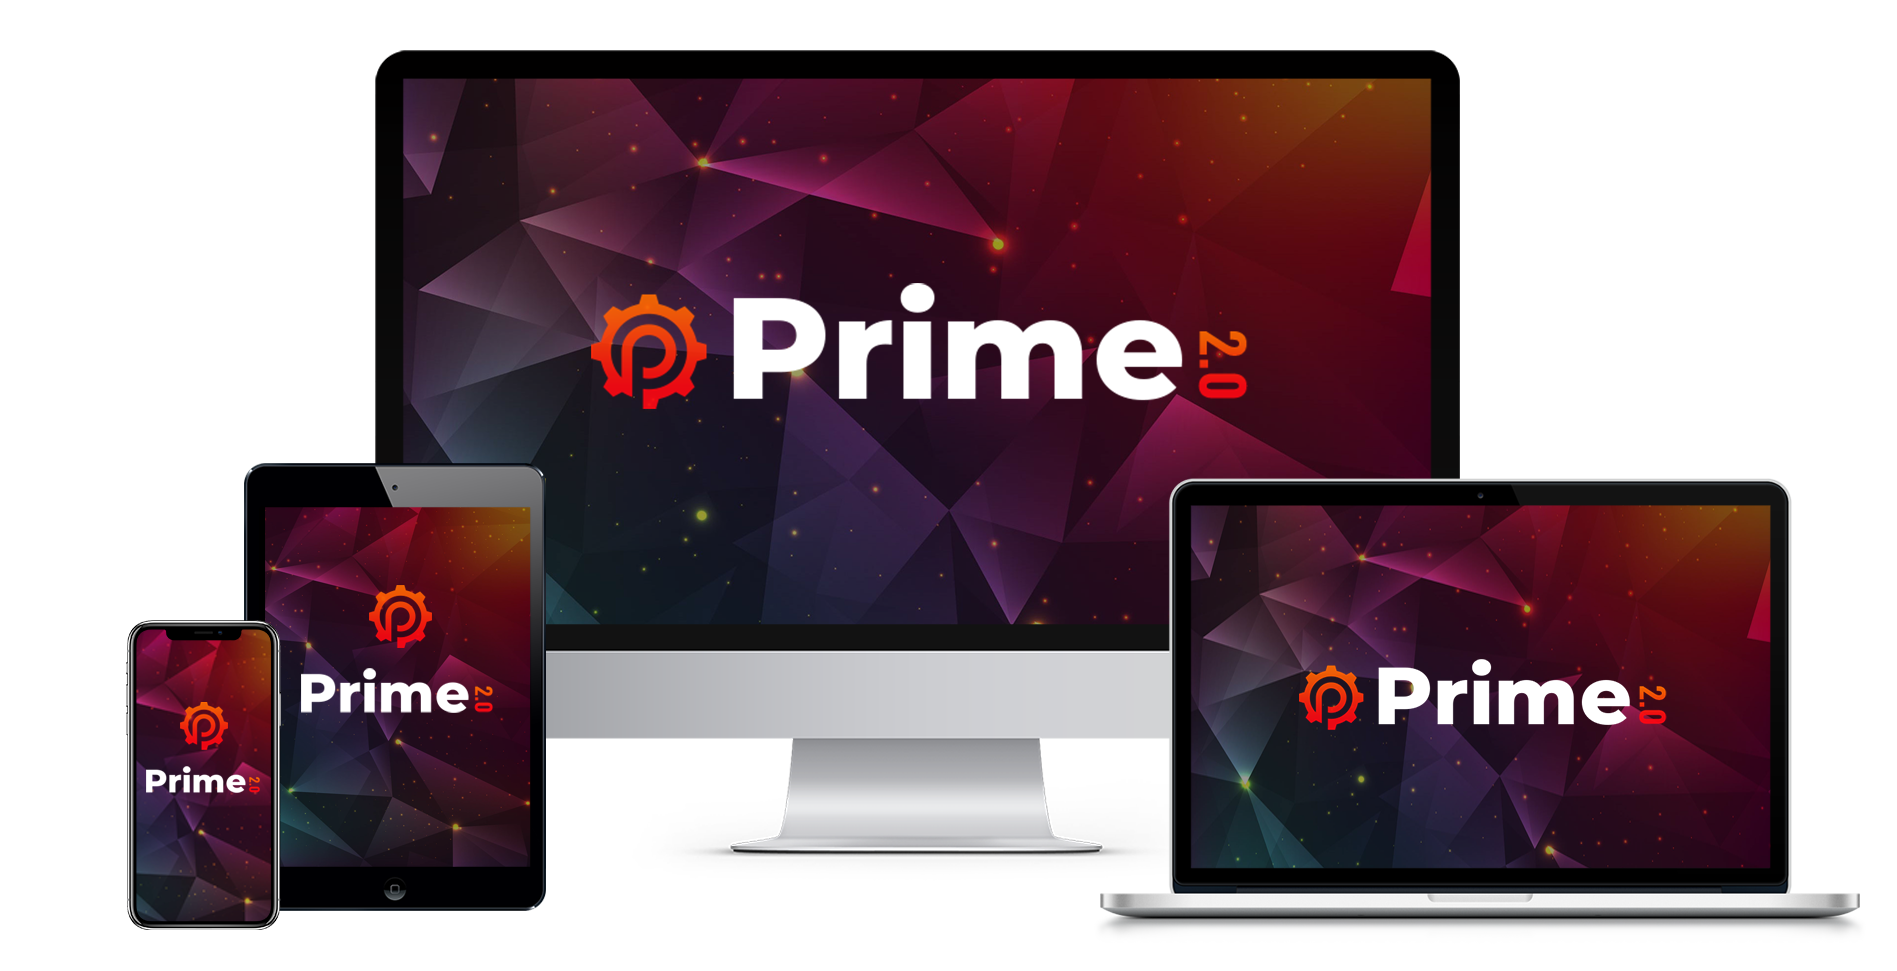 Billy Darr - Prime v2.0 Free Download